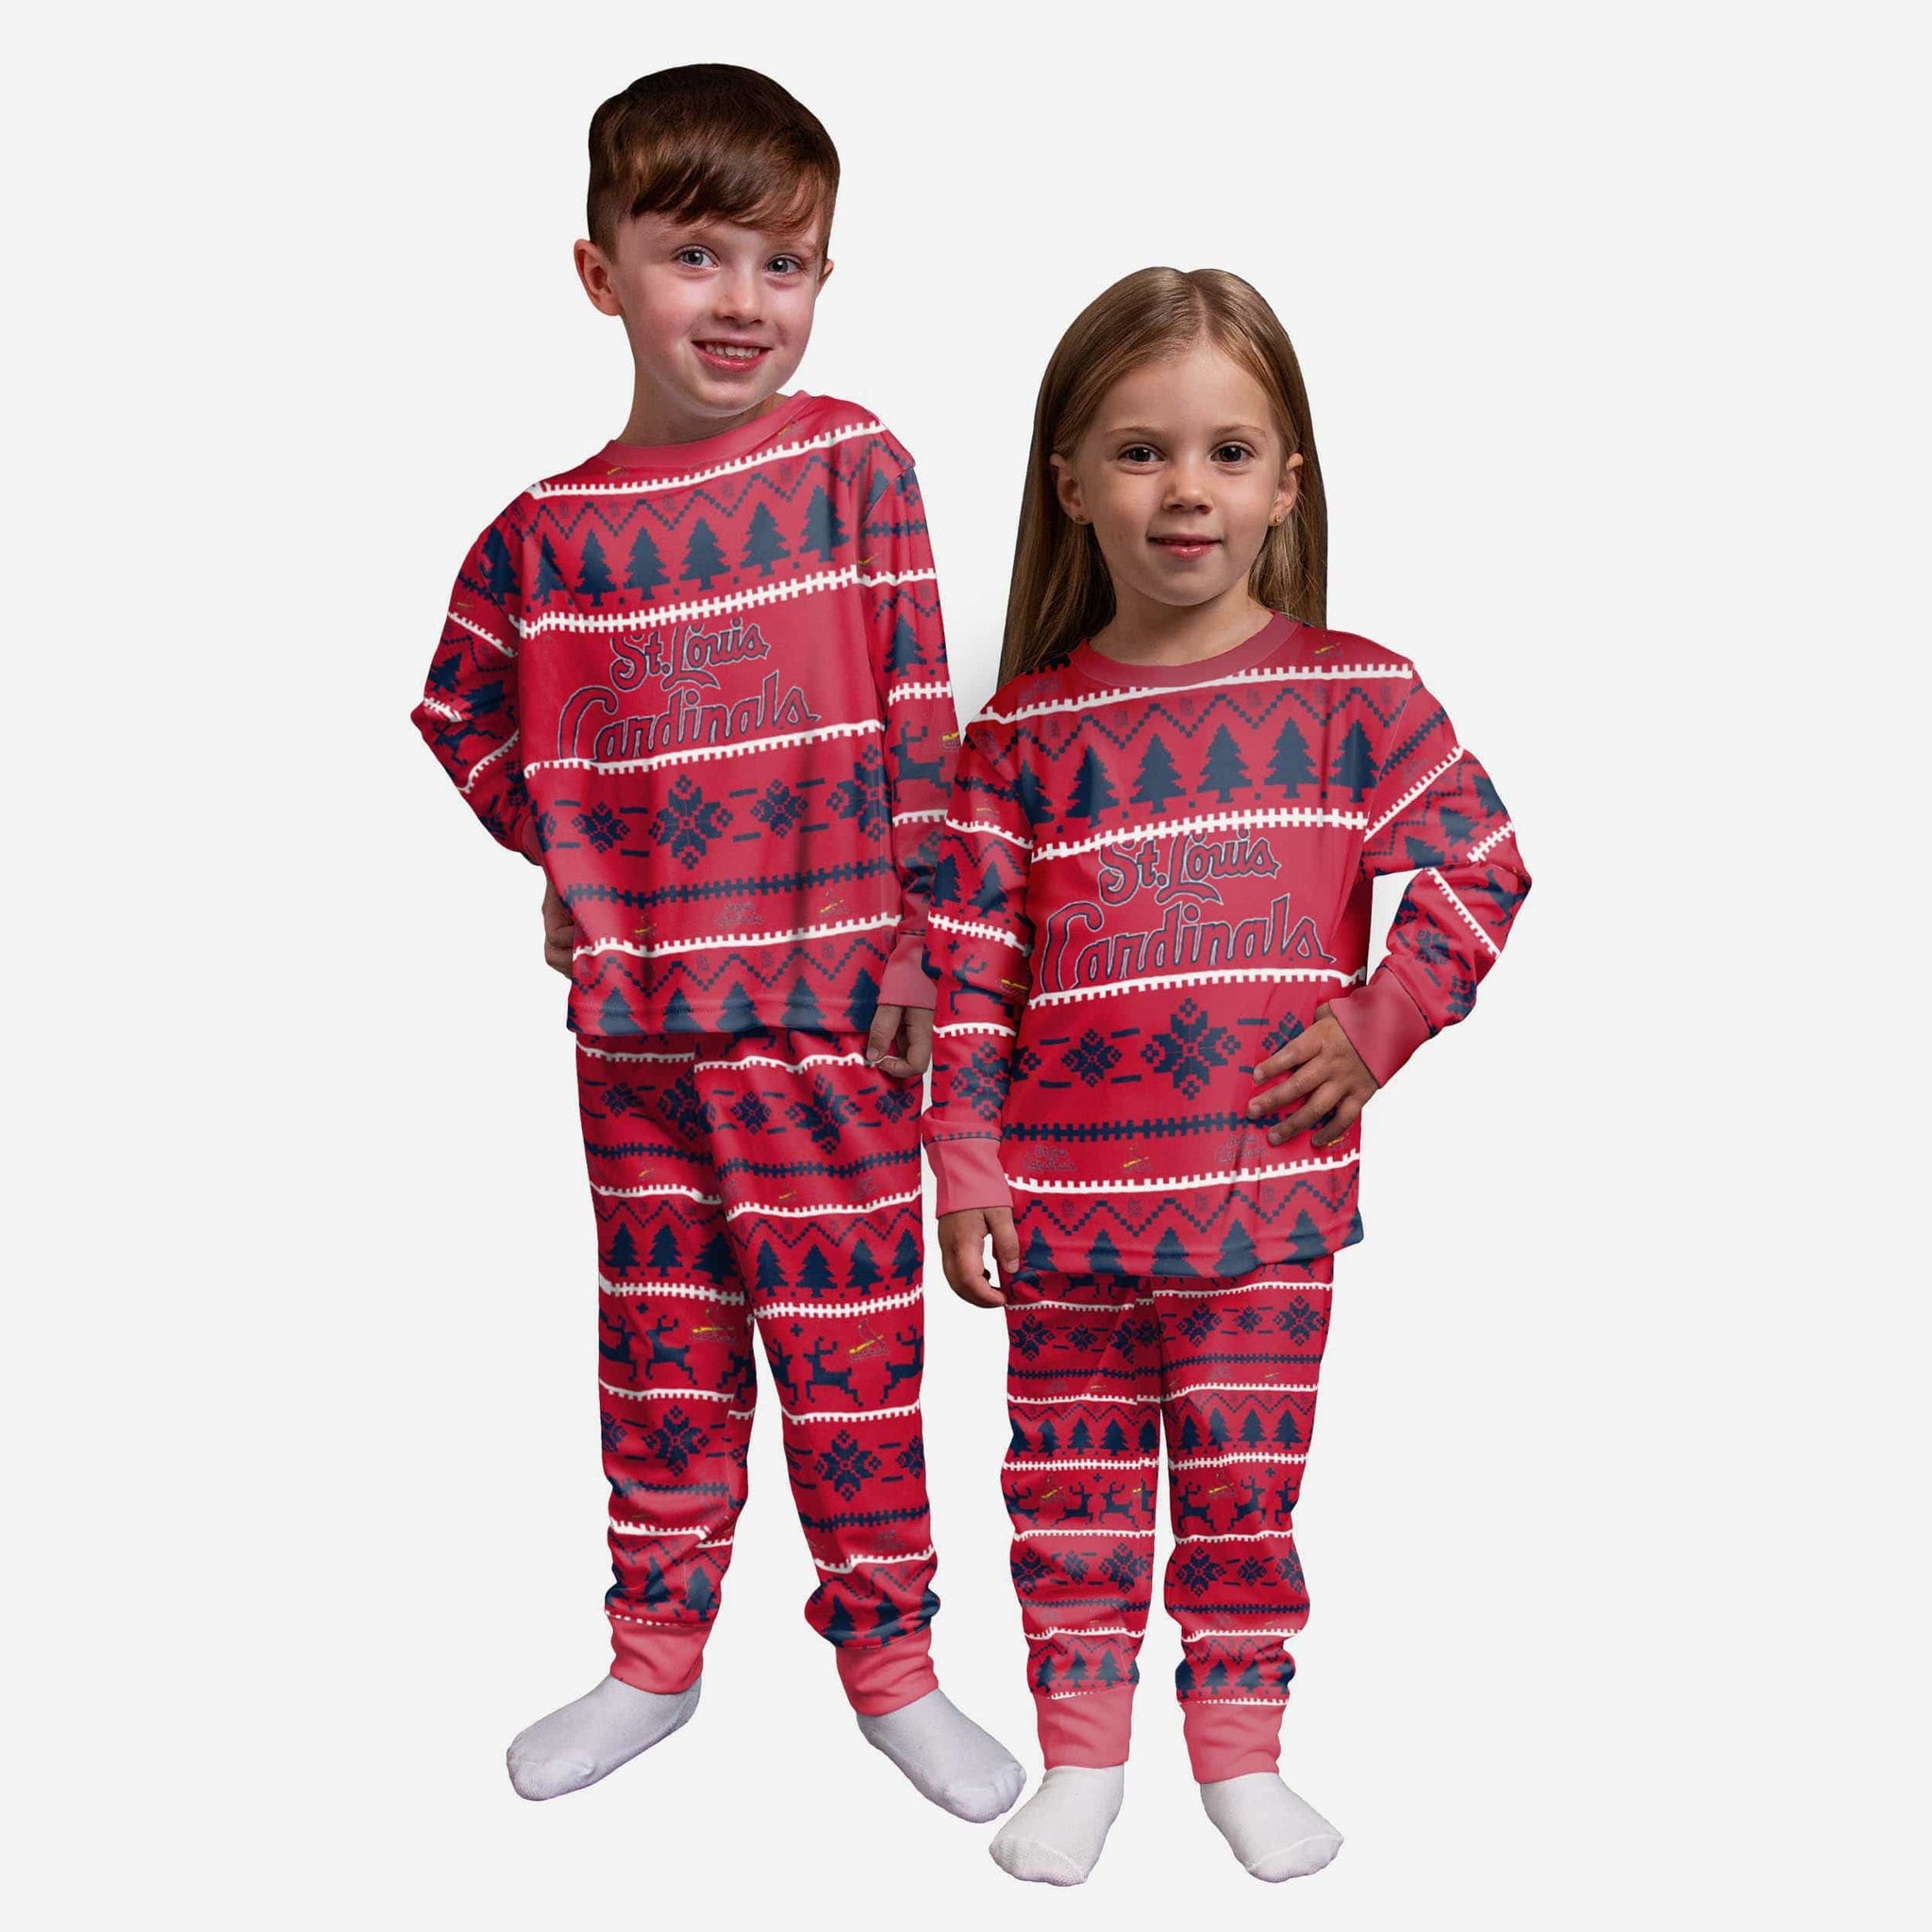 St. Louis Cardinals Pajamas